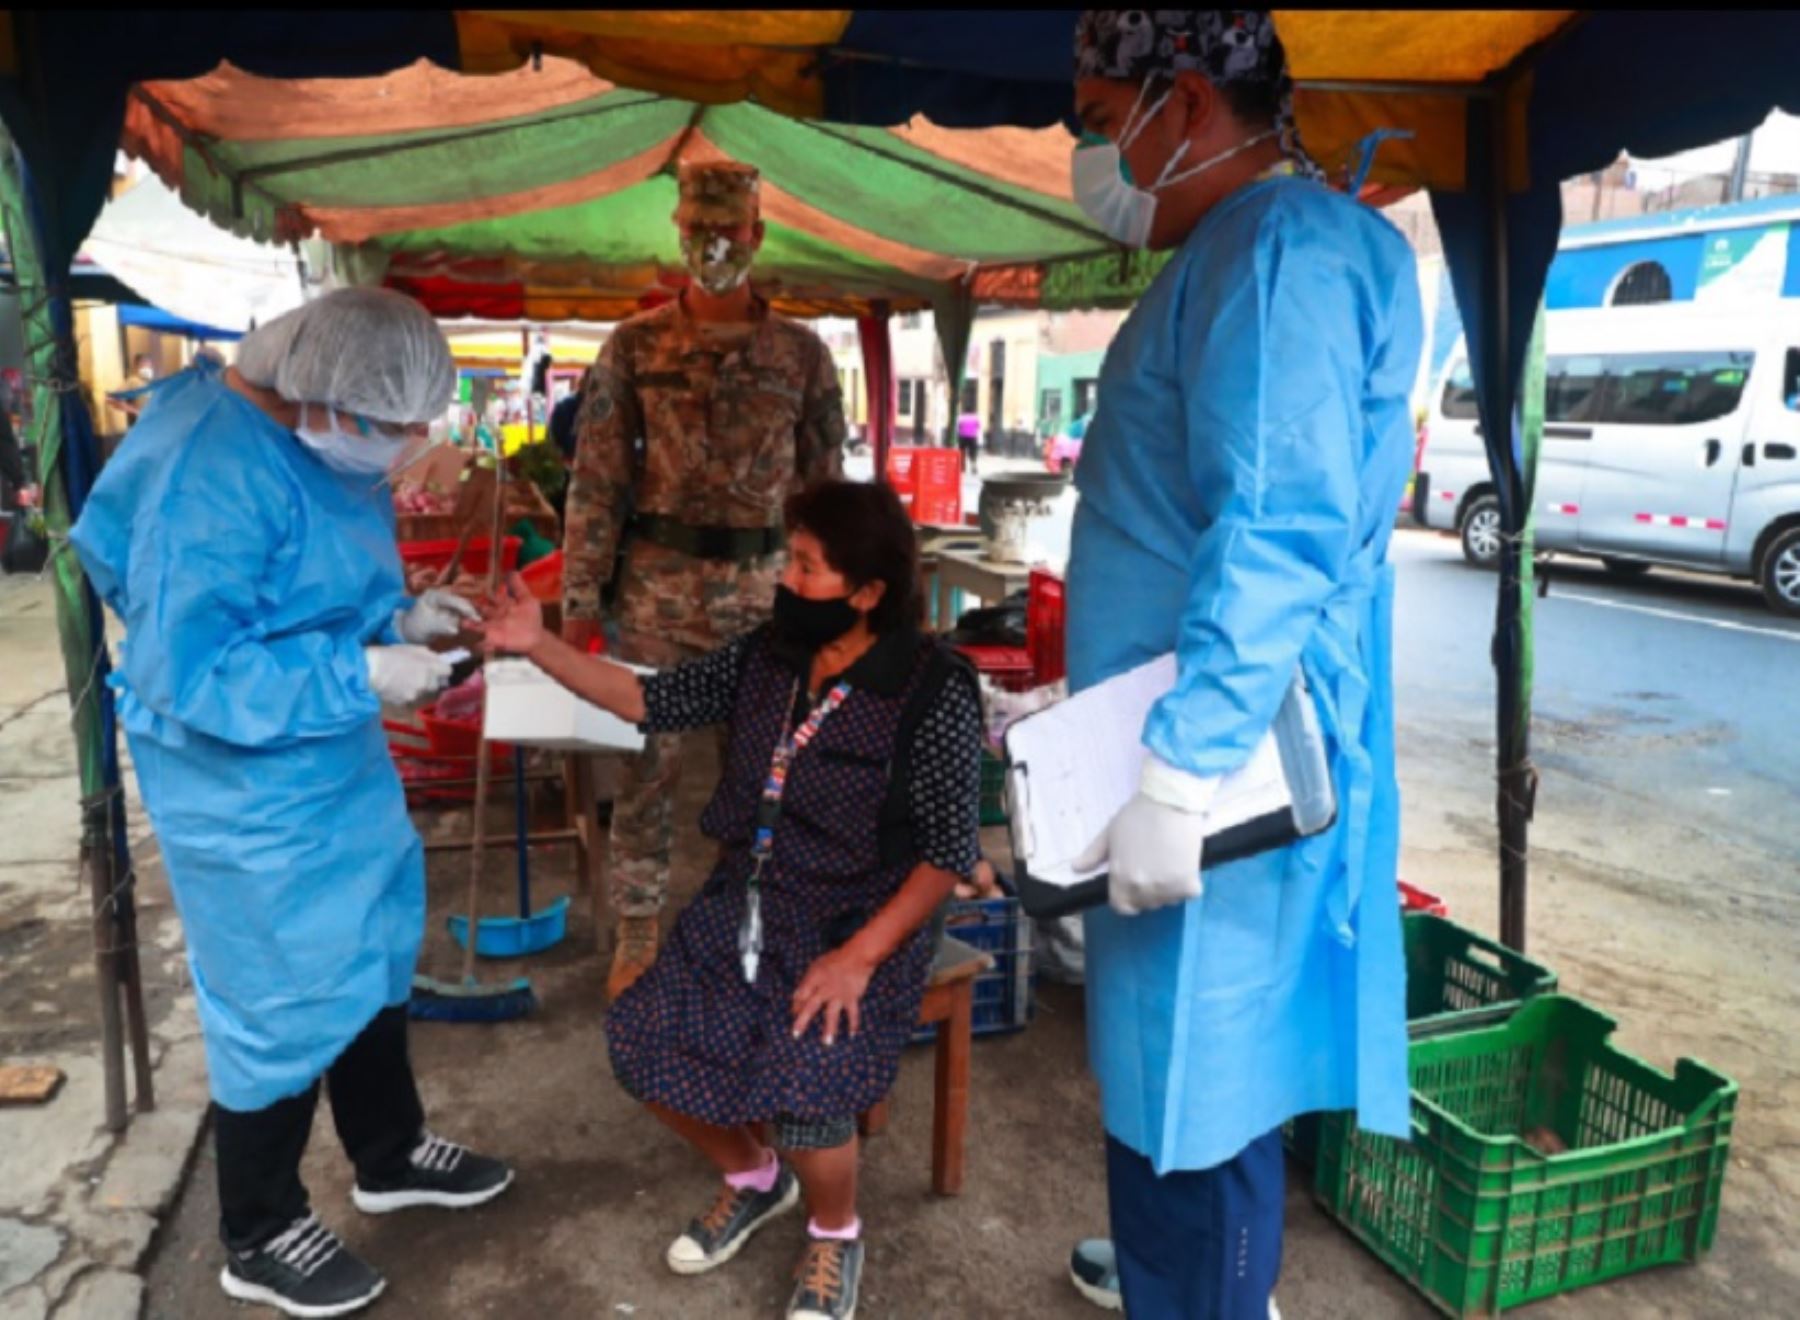 Como parte de las acciones destinadas a prevenir y controlar la propagación del covid-19, el grupo multisectorial Te Cuido Perú ejecutará 18 operaciones Tayta mañana jueves 7 de enero, en varias regiones del país y en Lima, en las que se atenderá a más de 10,000 personas vulnerables a la pandemia.